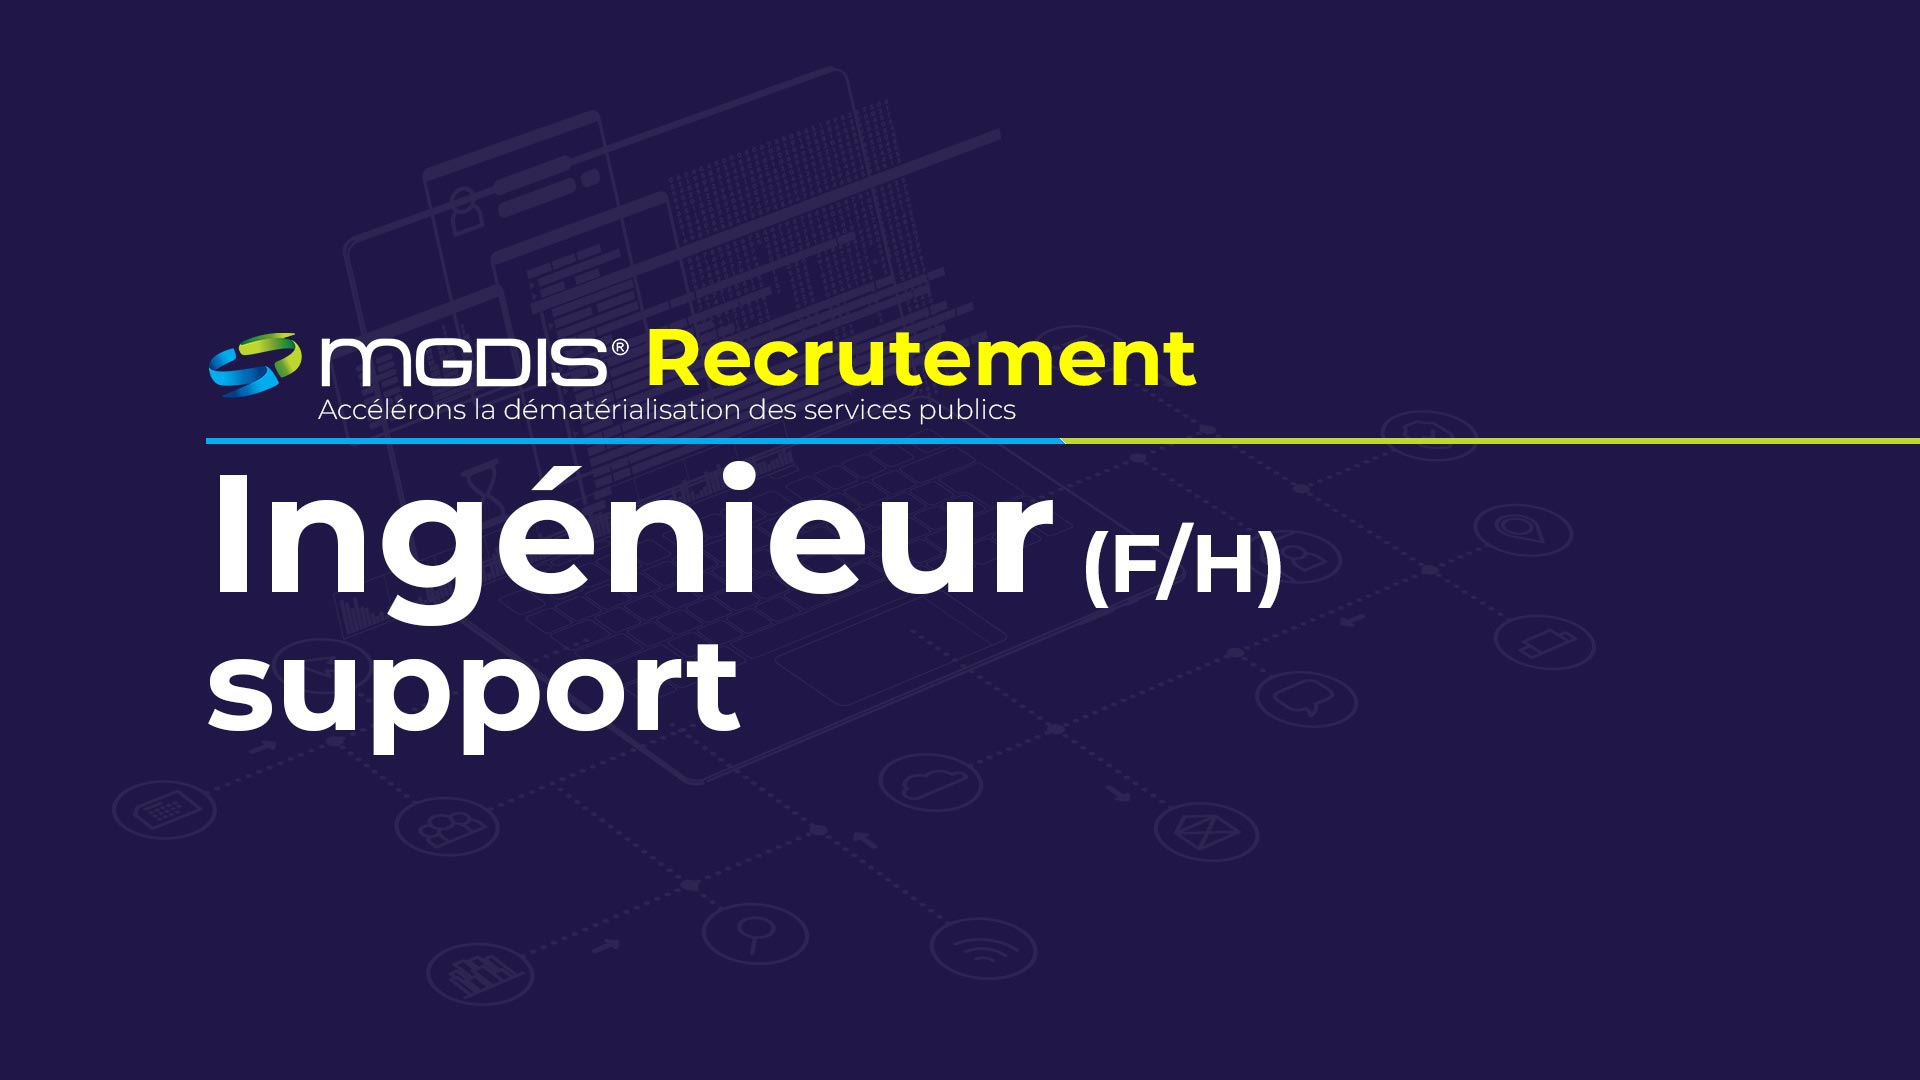 Recrutement: Ingénieur support (F/H) chez MGDIS à Vannes